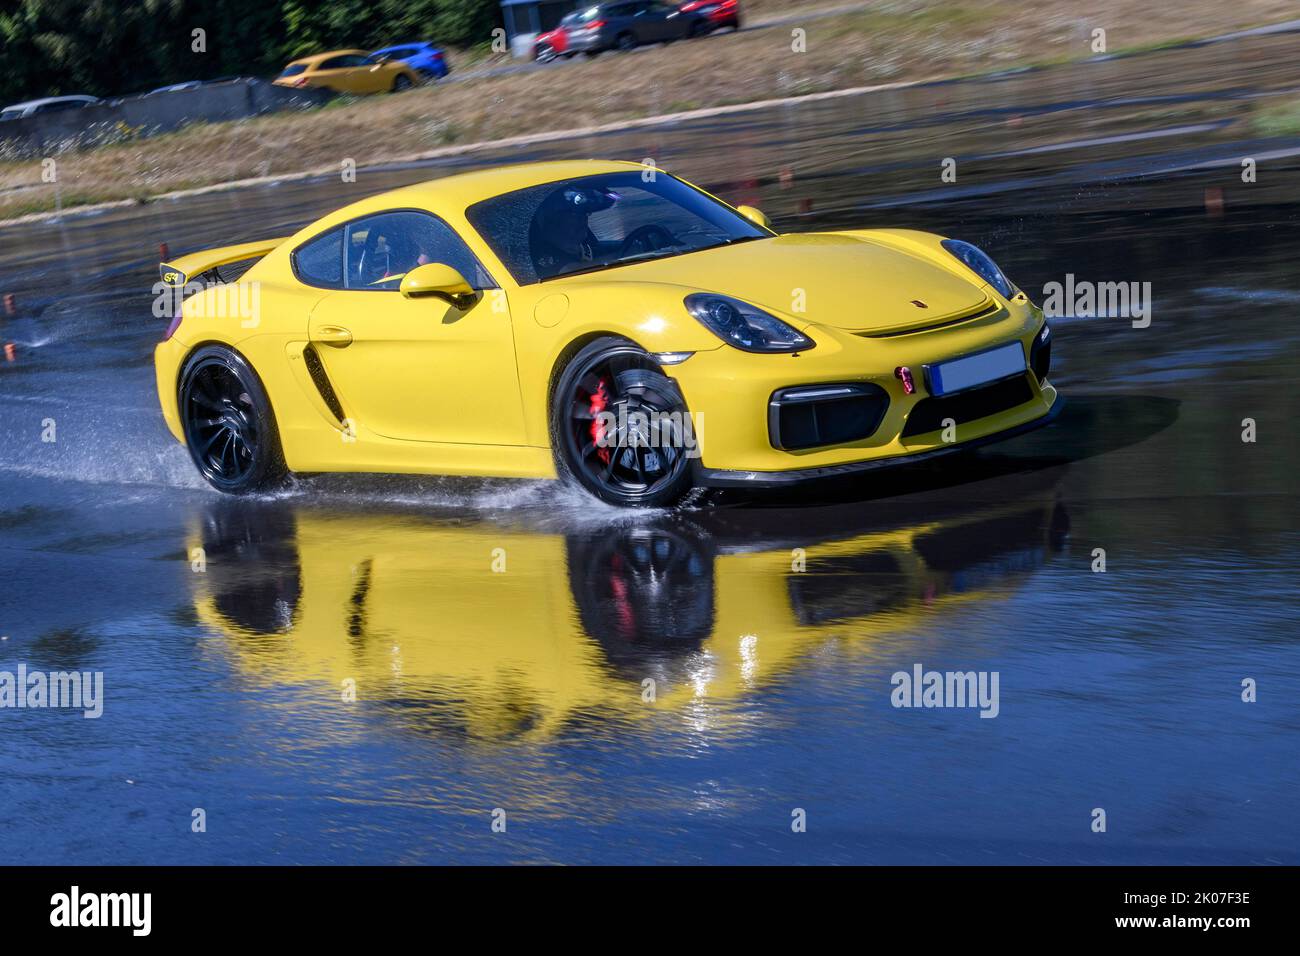 Coches de carreras de coches deportivos Porsche Cayman GT4 en la lluvia artificial carretera húmeda durante la conducción de seguridad patinetas de entrenamiento debido al aquaplaning, en el primer plano Foto de stock